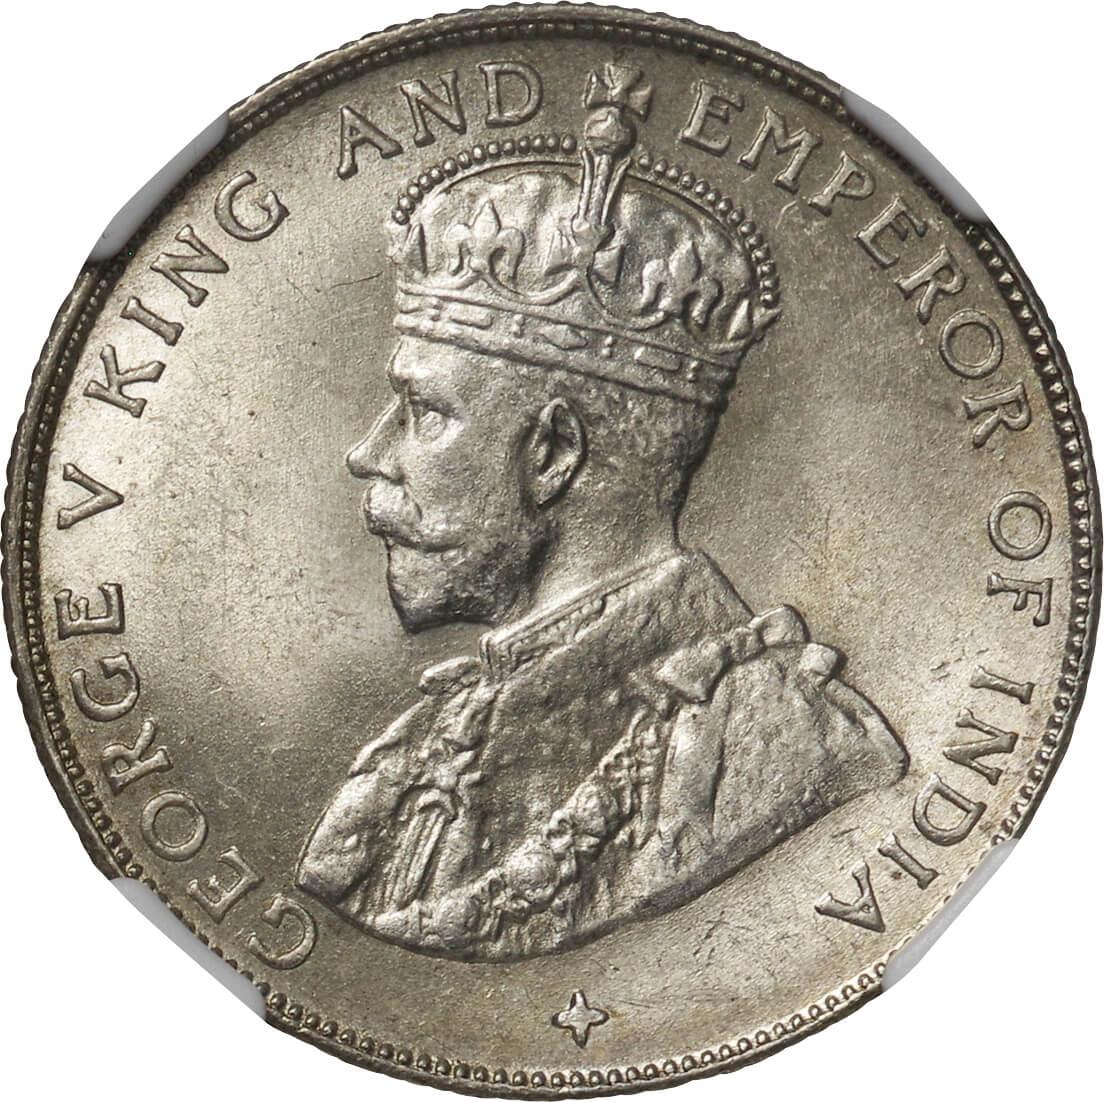 1921年 英領海峡植民地 50セント銀貨 ジョージ5世 - 旧貨幣/金貨/銀貨 ...